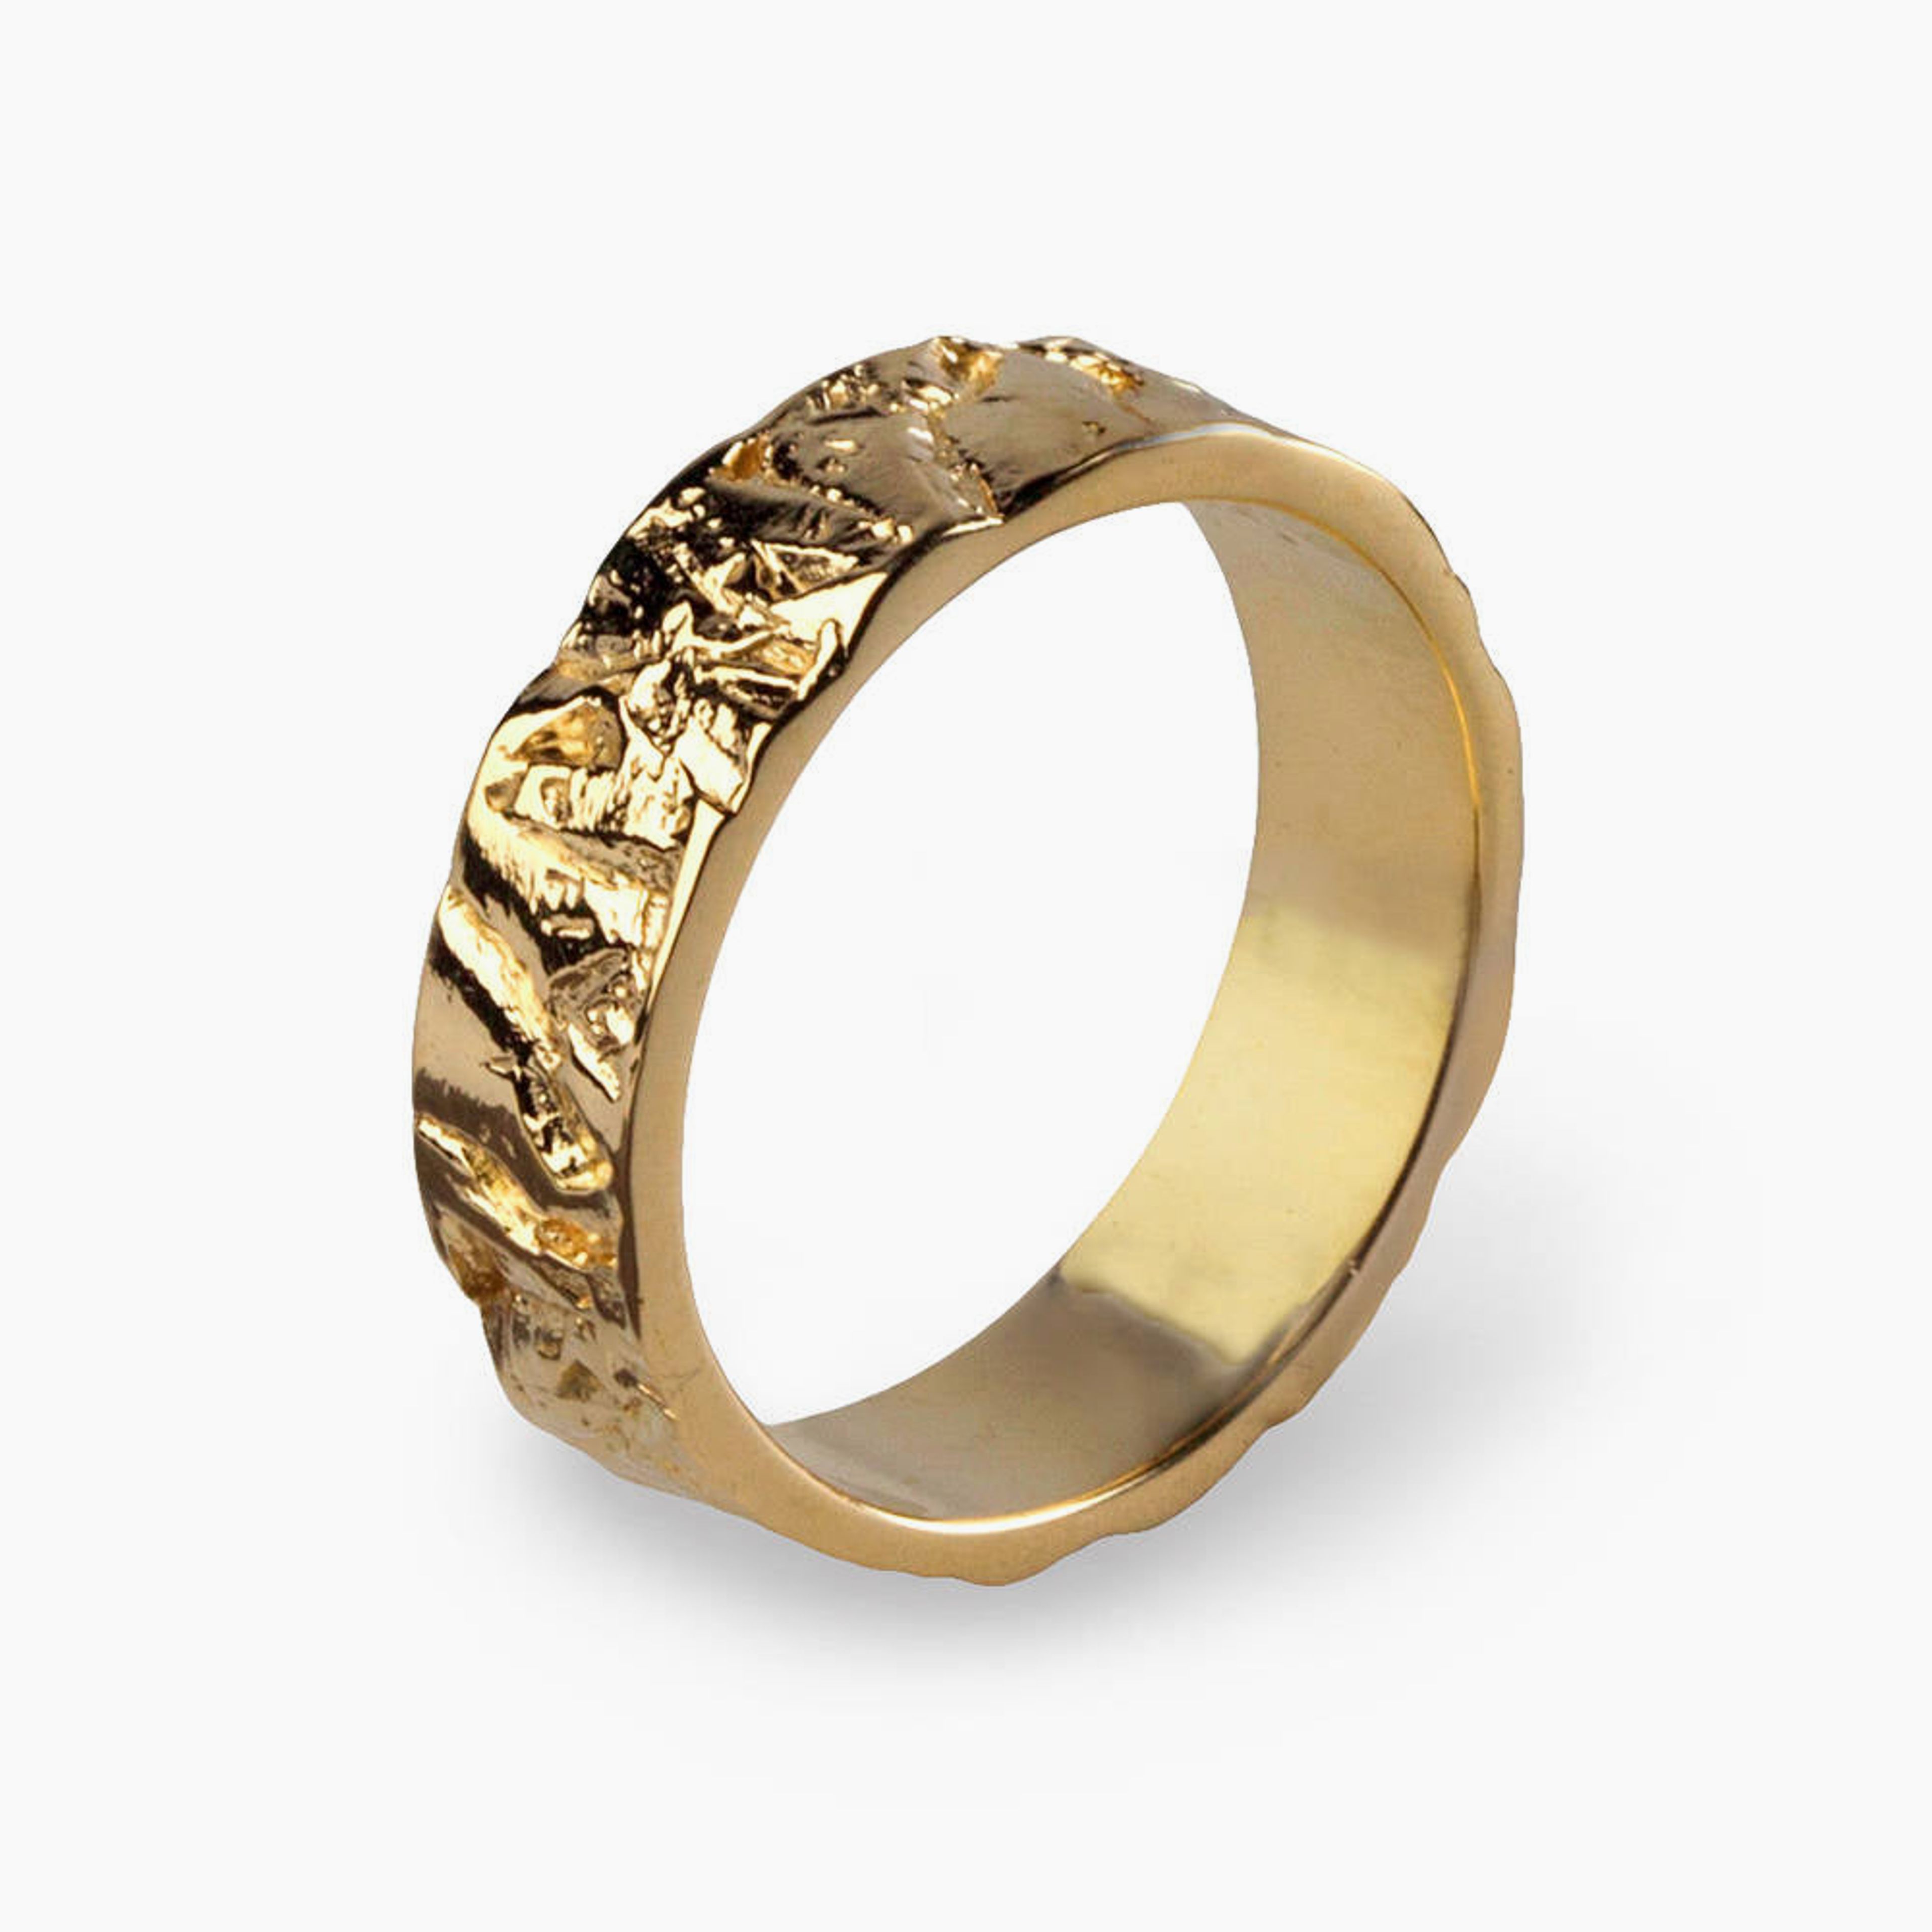 Meteorite Gold Wedding Band Ring